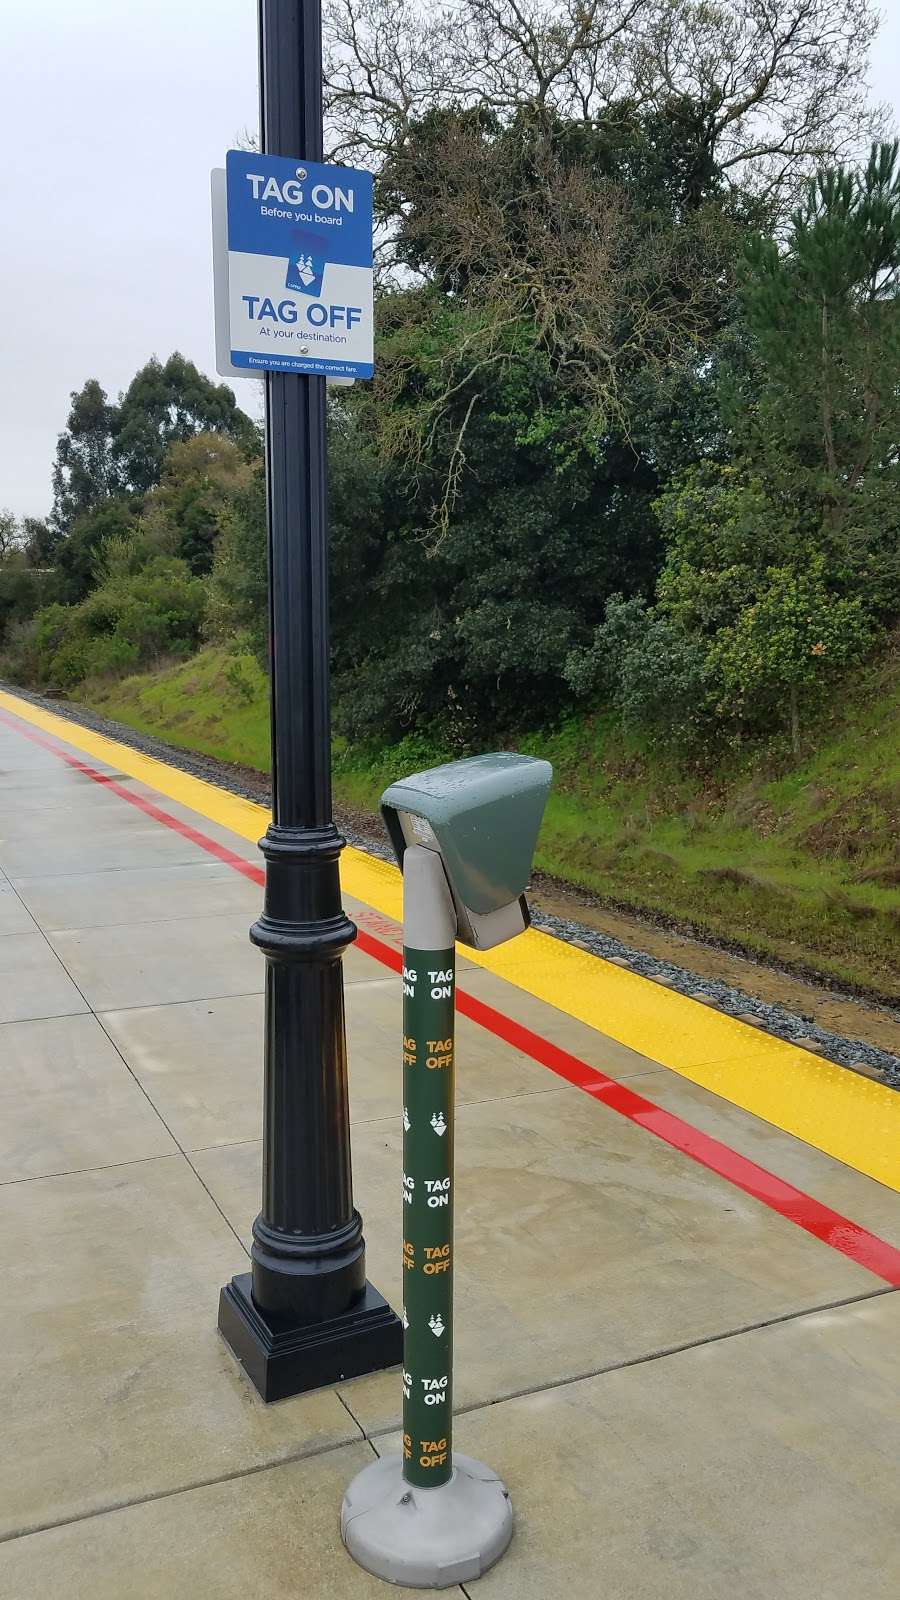 SMART Novato Hamilton Station | Main Gate Rd, Novato, CA 94949, USA